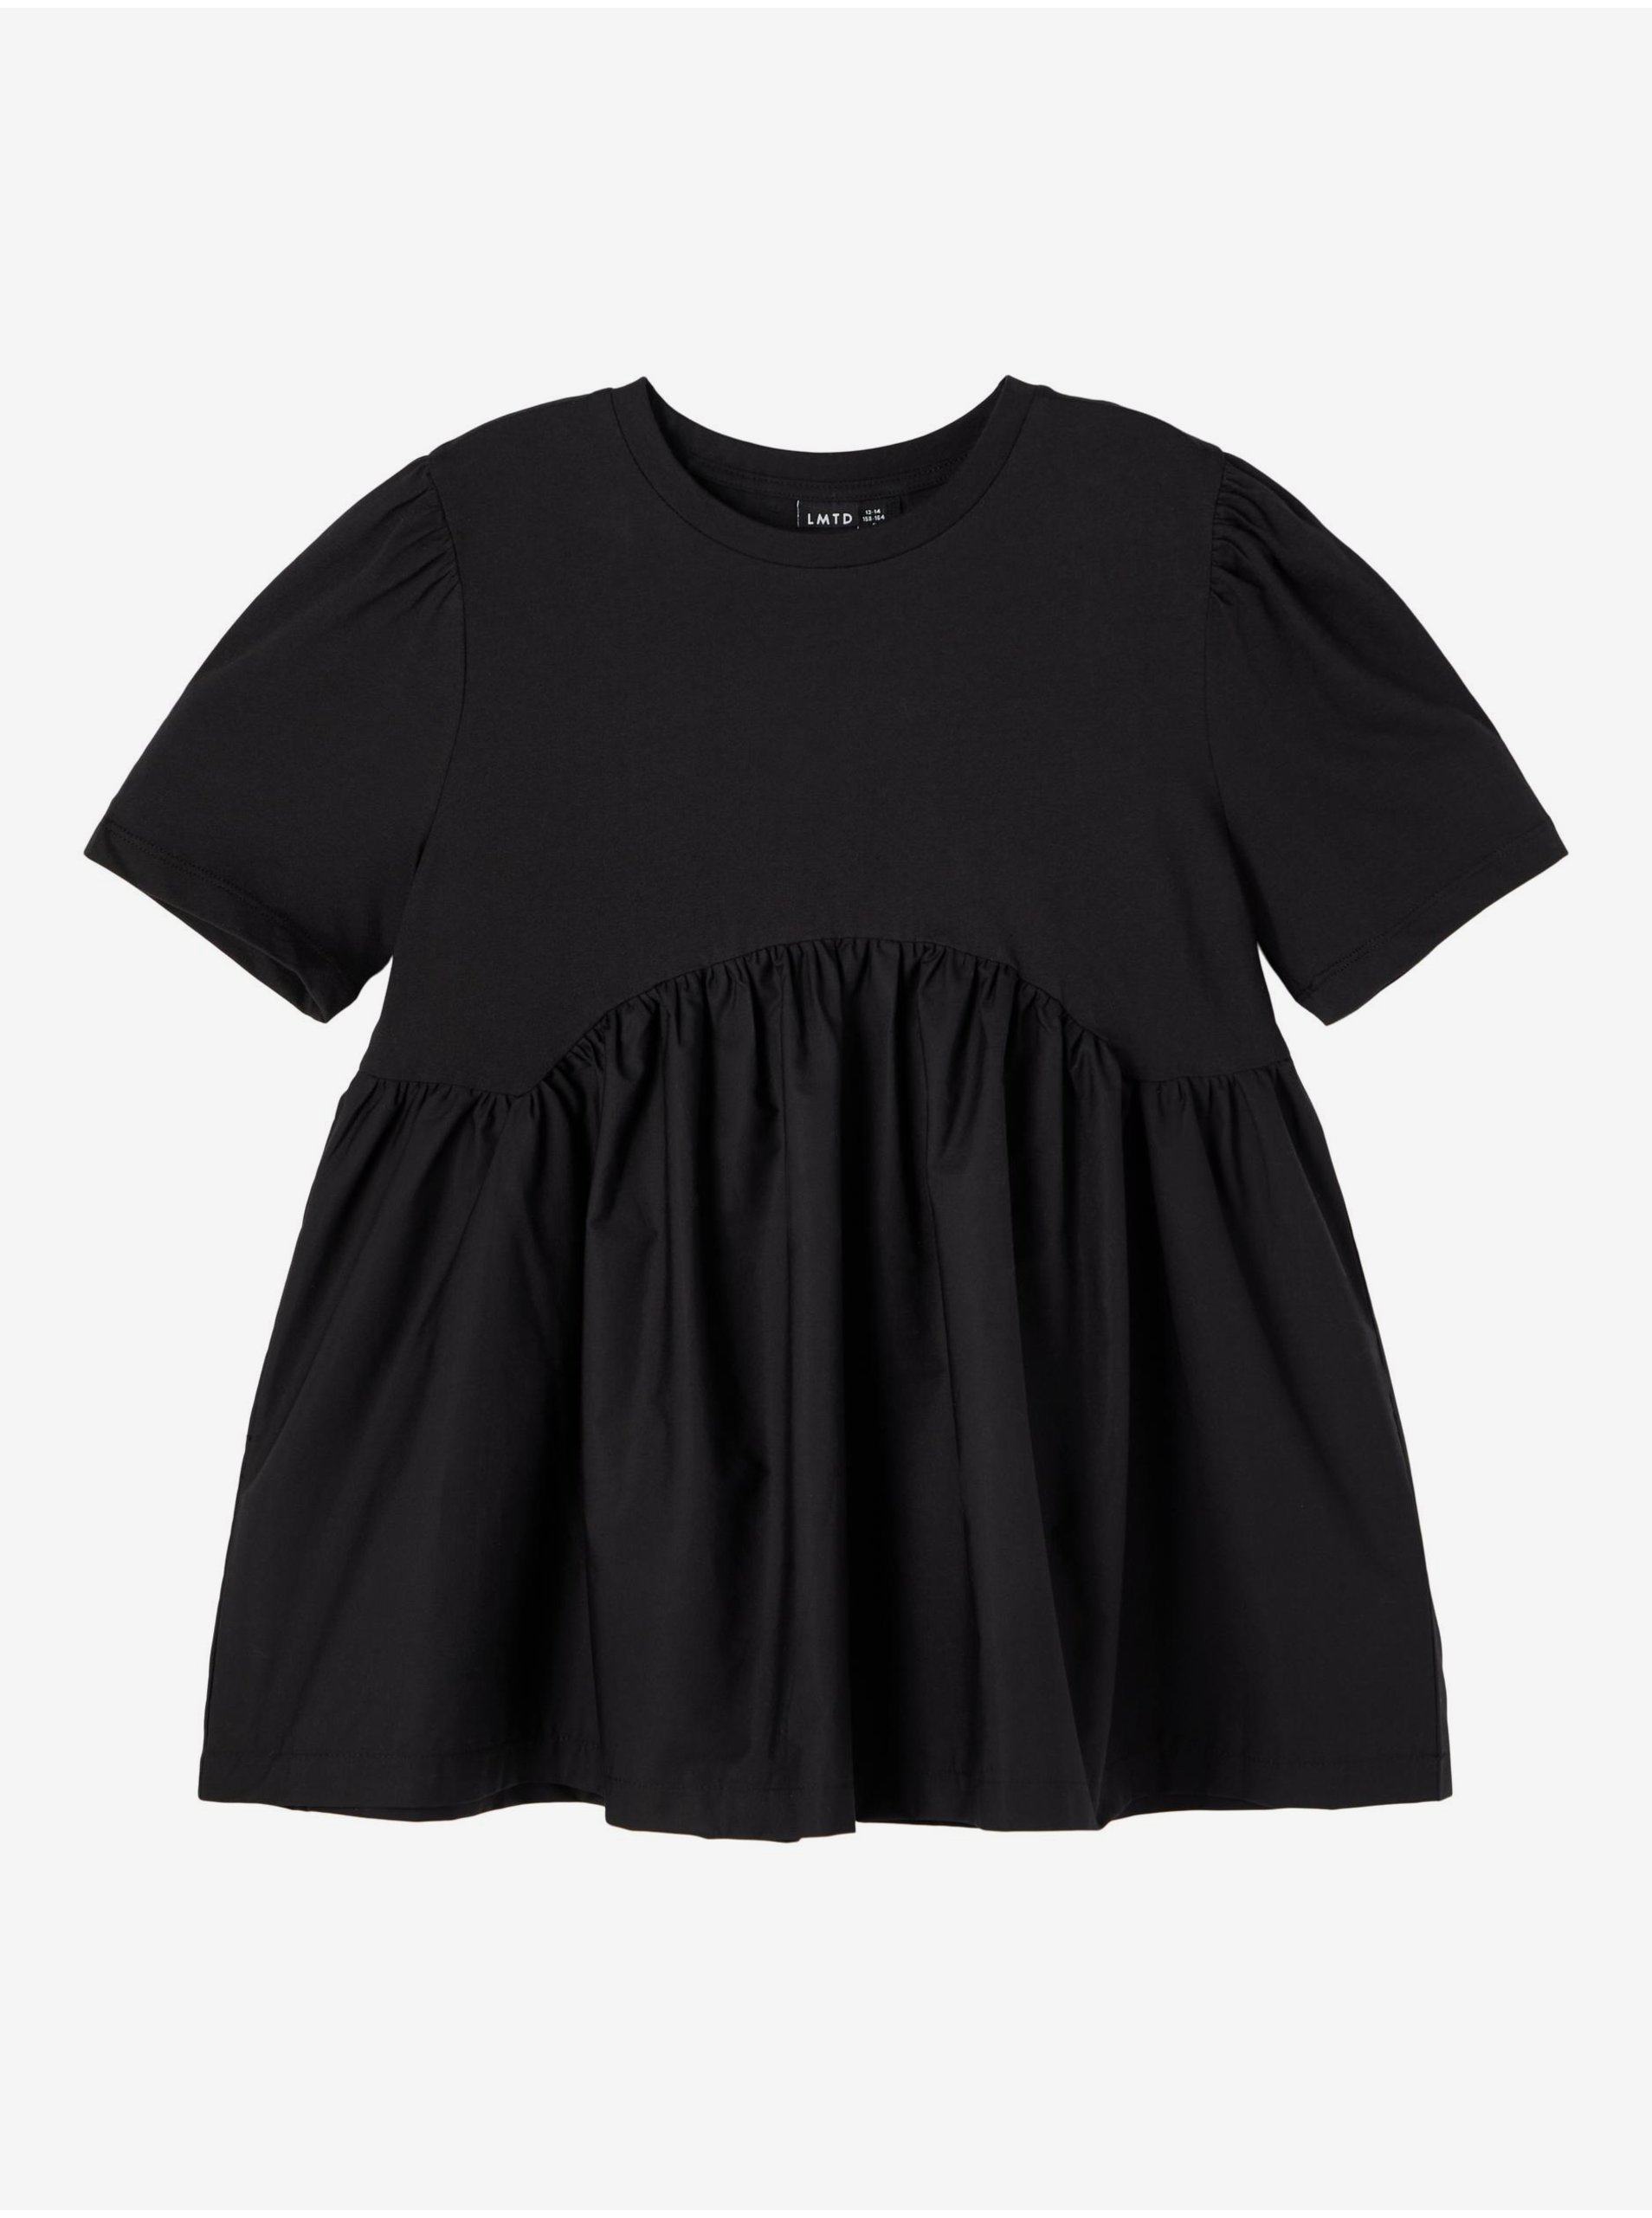 Black Girly Loose T-shirt Name It Bitten - Girls